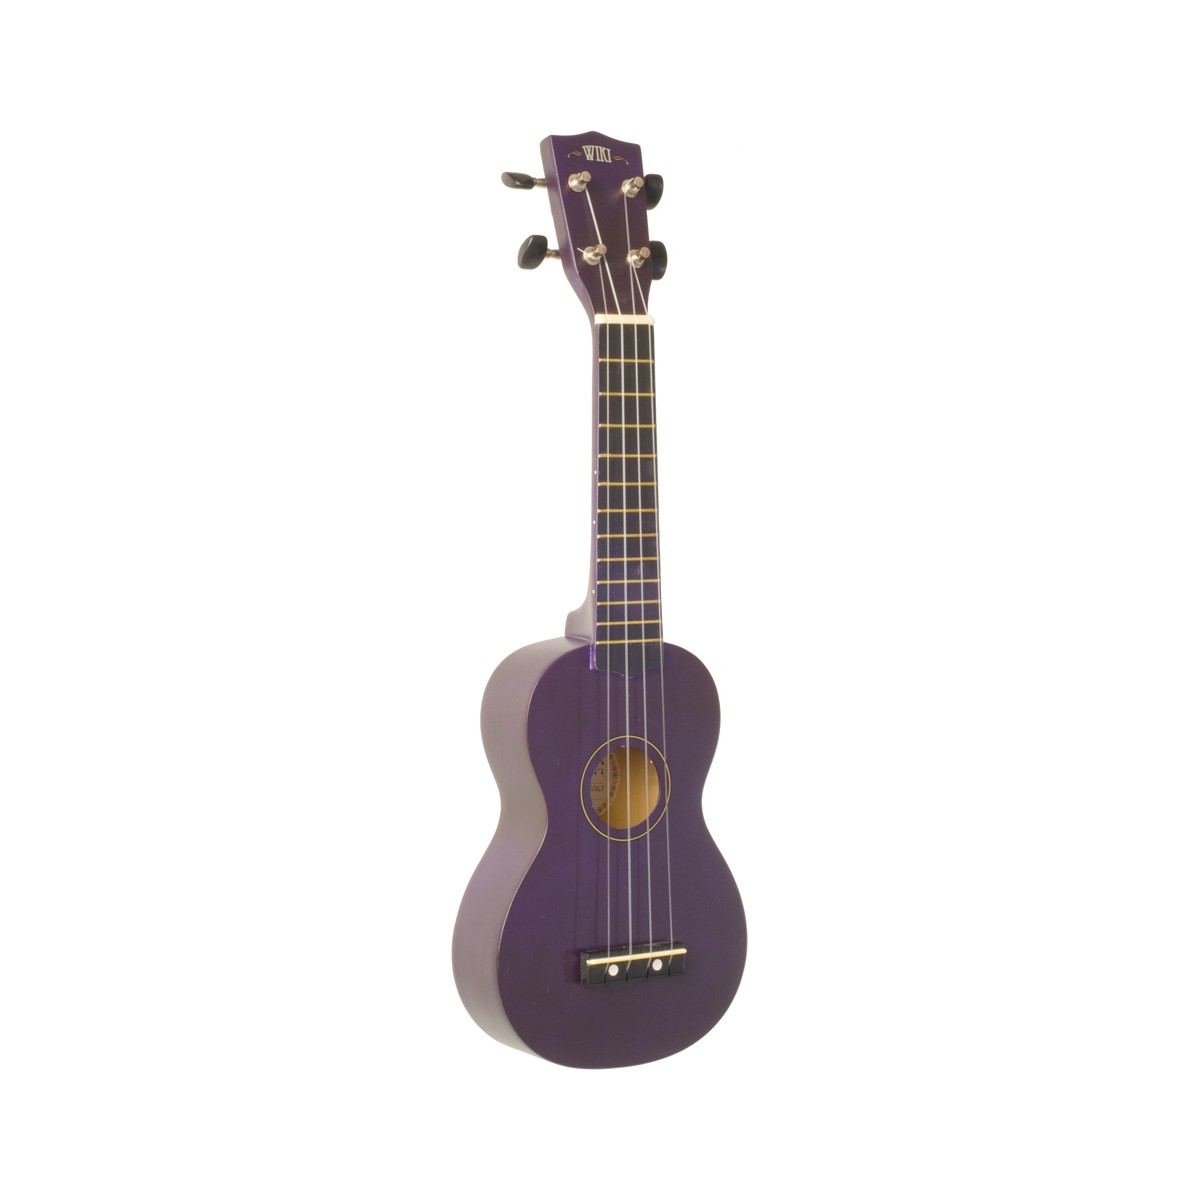 WIKI UK10S VLT - гитара укулеле сопрано клен, цвет фиолетовый матовый, чехол в комплекте